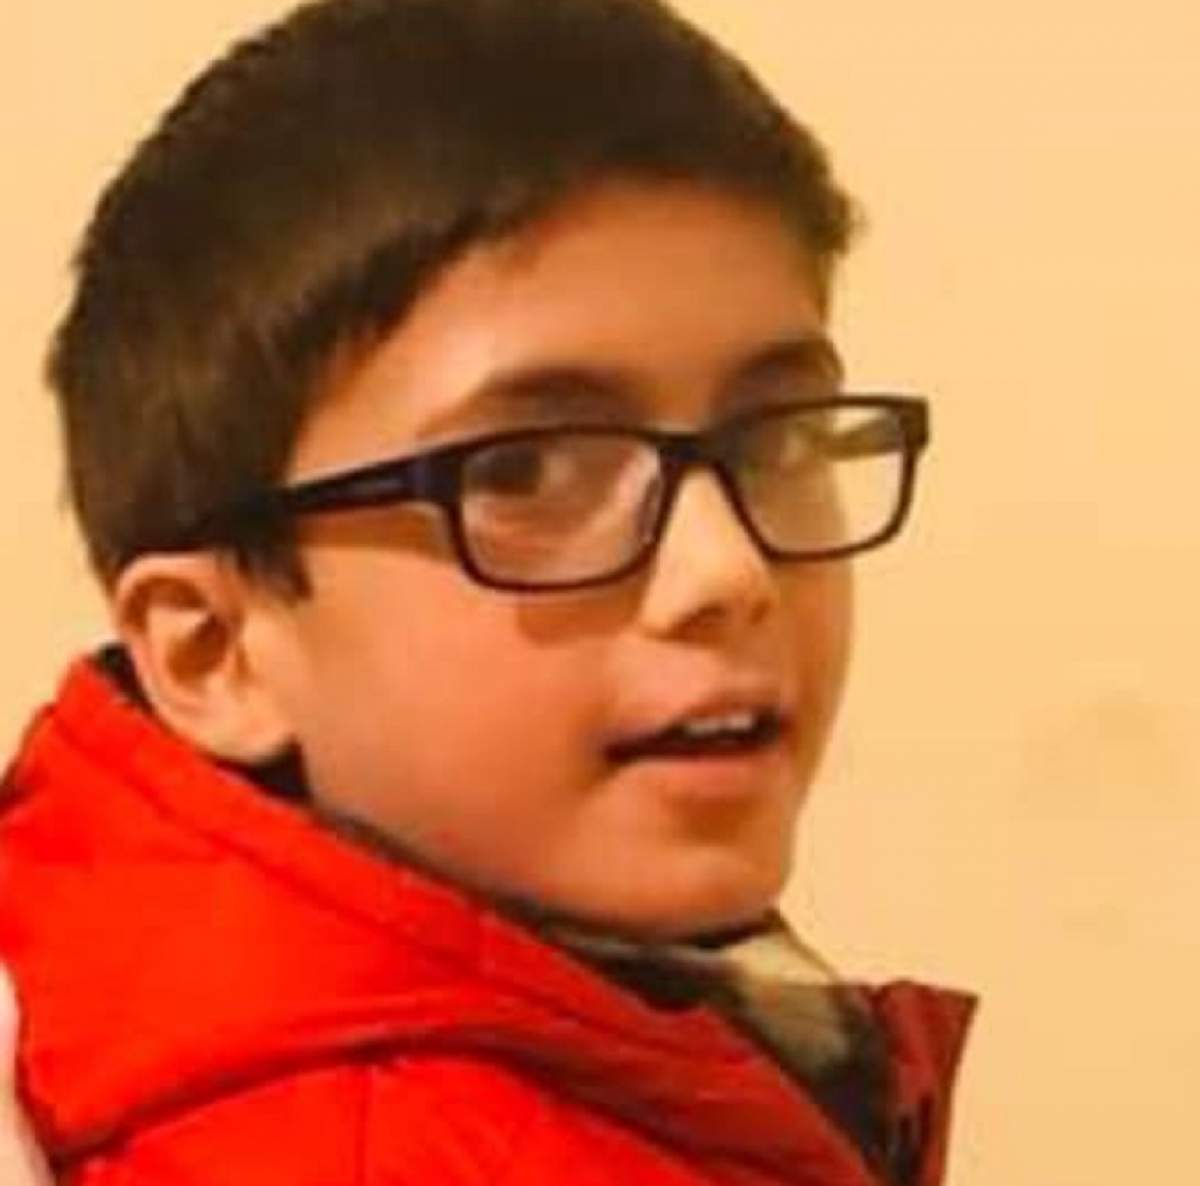 Un băieţel de 11 ani a murit după ce tatăl său i-a dat să mănânce o ciocolată